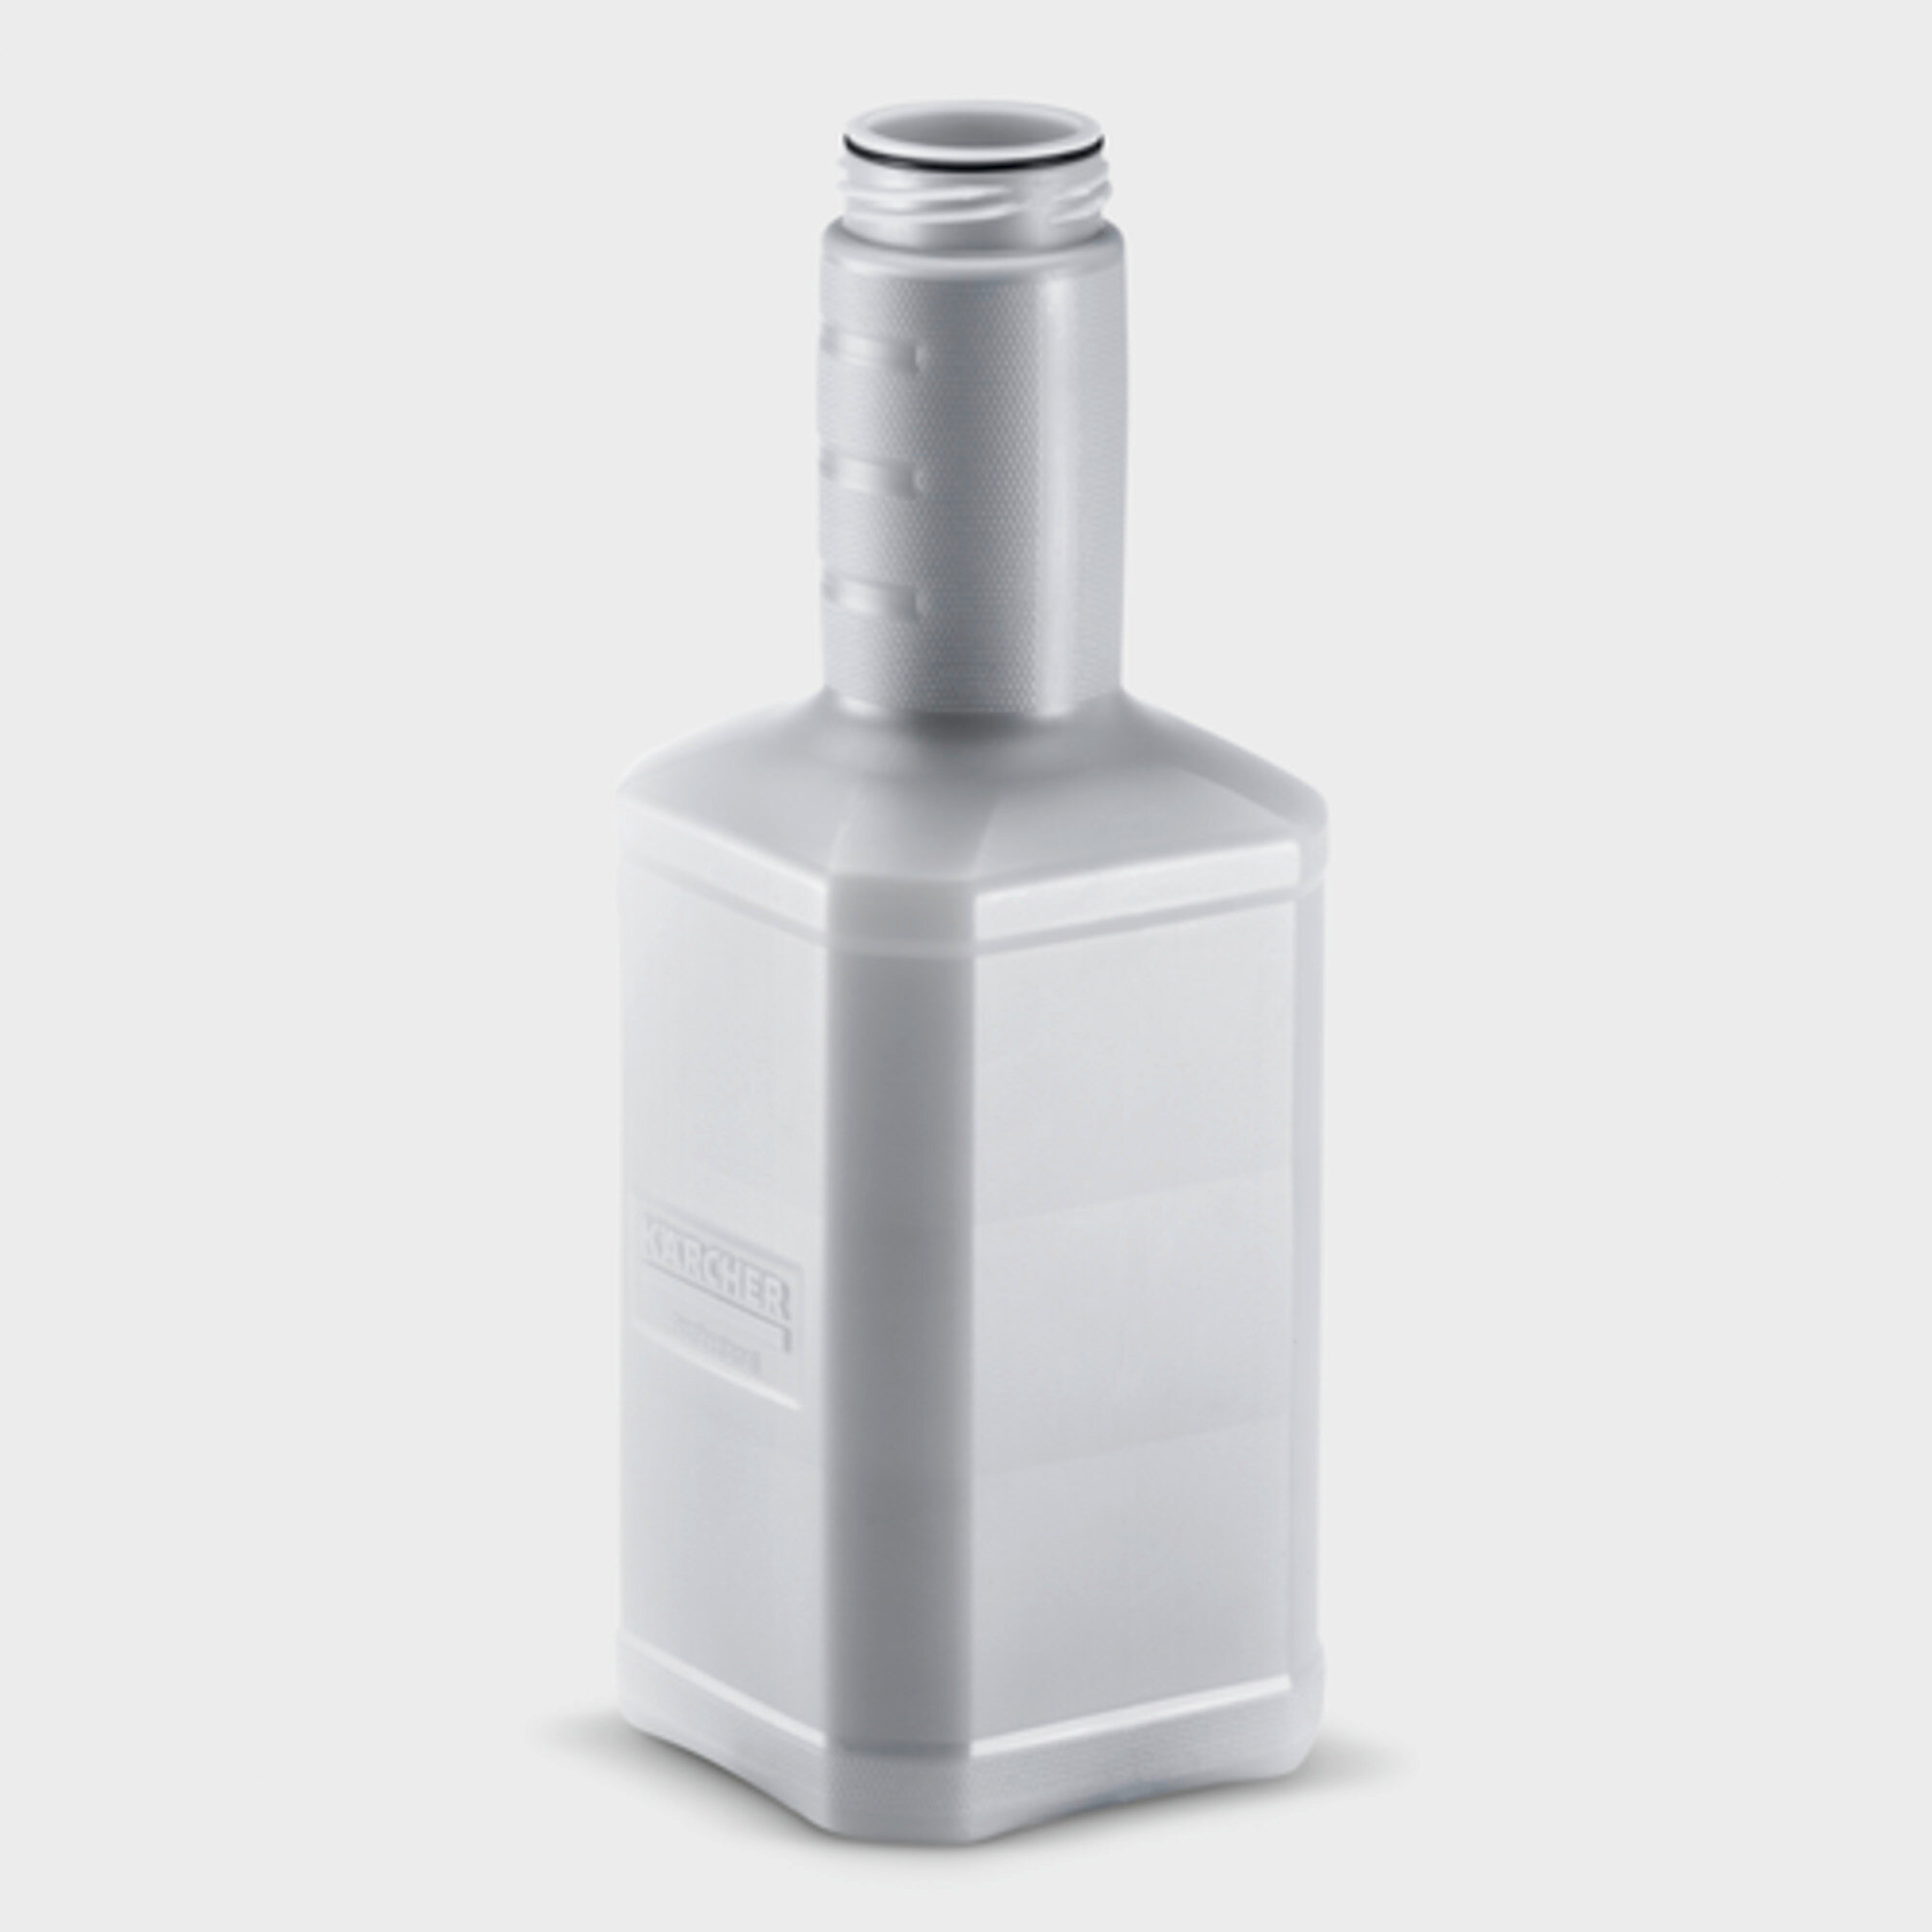  Schuimlans DUO Advanced 3, 900 l/h - 2500 l/h: Ergonomische container van 2 liter voor wasmiddelen